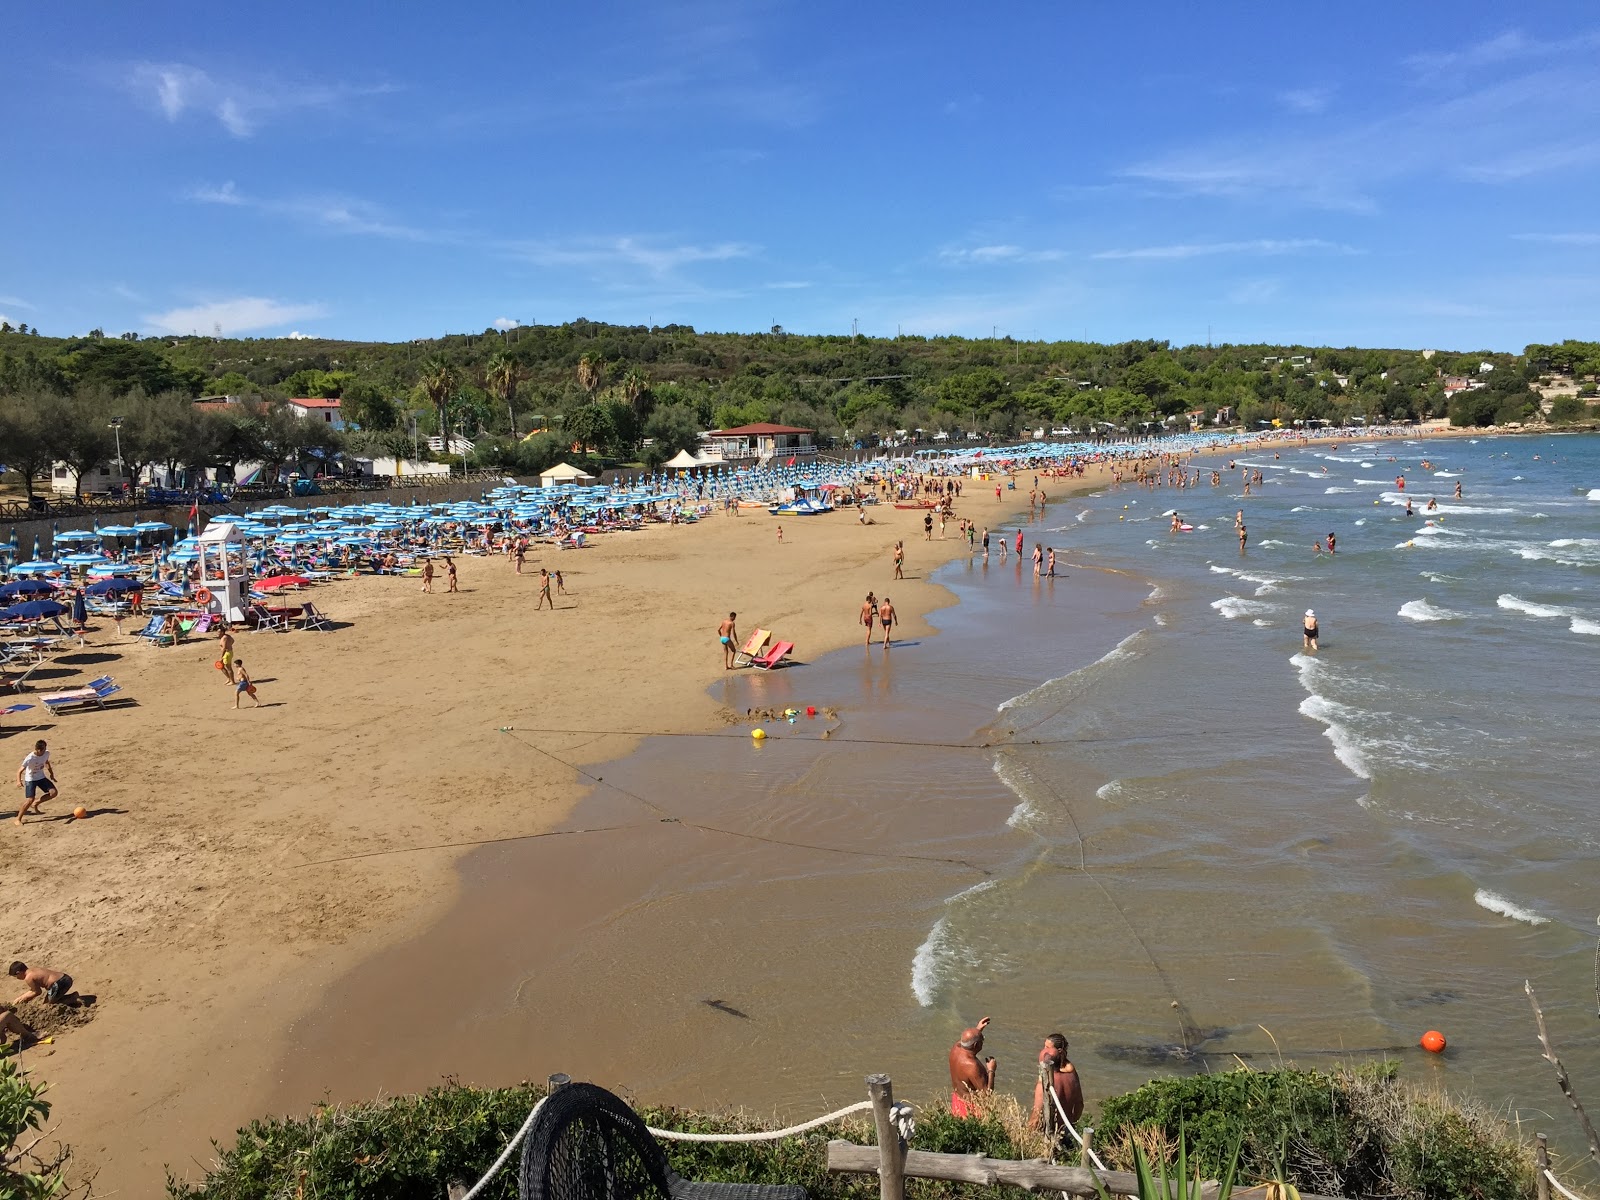 Spiaggia di Bescile'in fotoğrafı i̇nce kahverengi kum yüzey ile